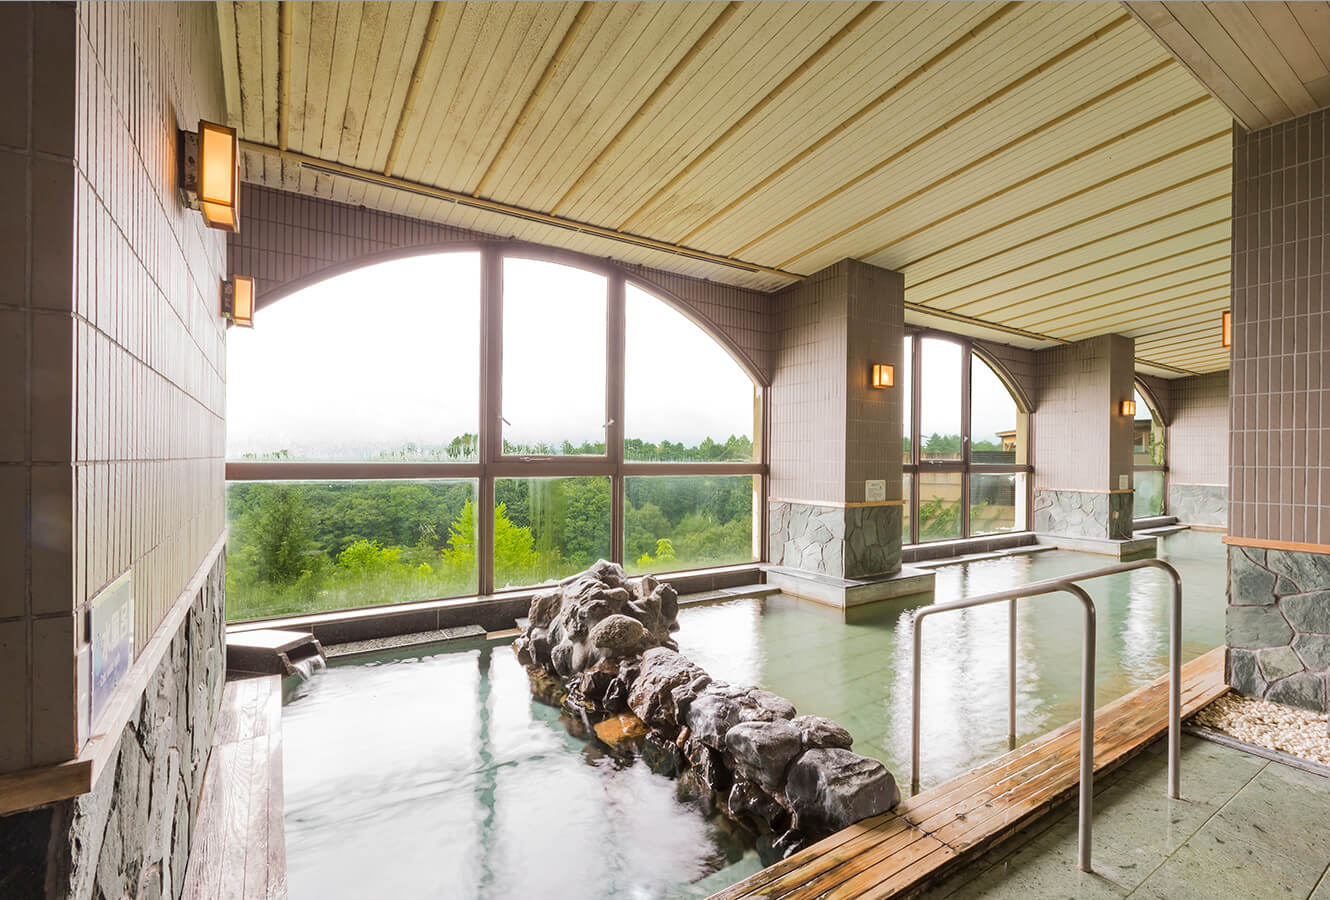 Washi-juku Onsen A Nature-Rich Hot Spring Resort with a 450-Year History